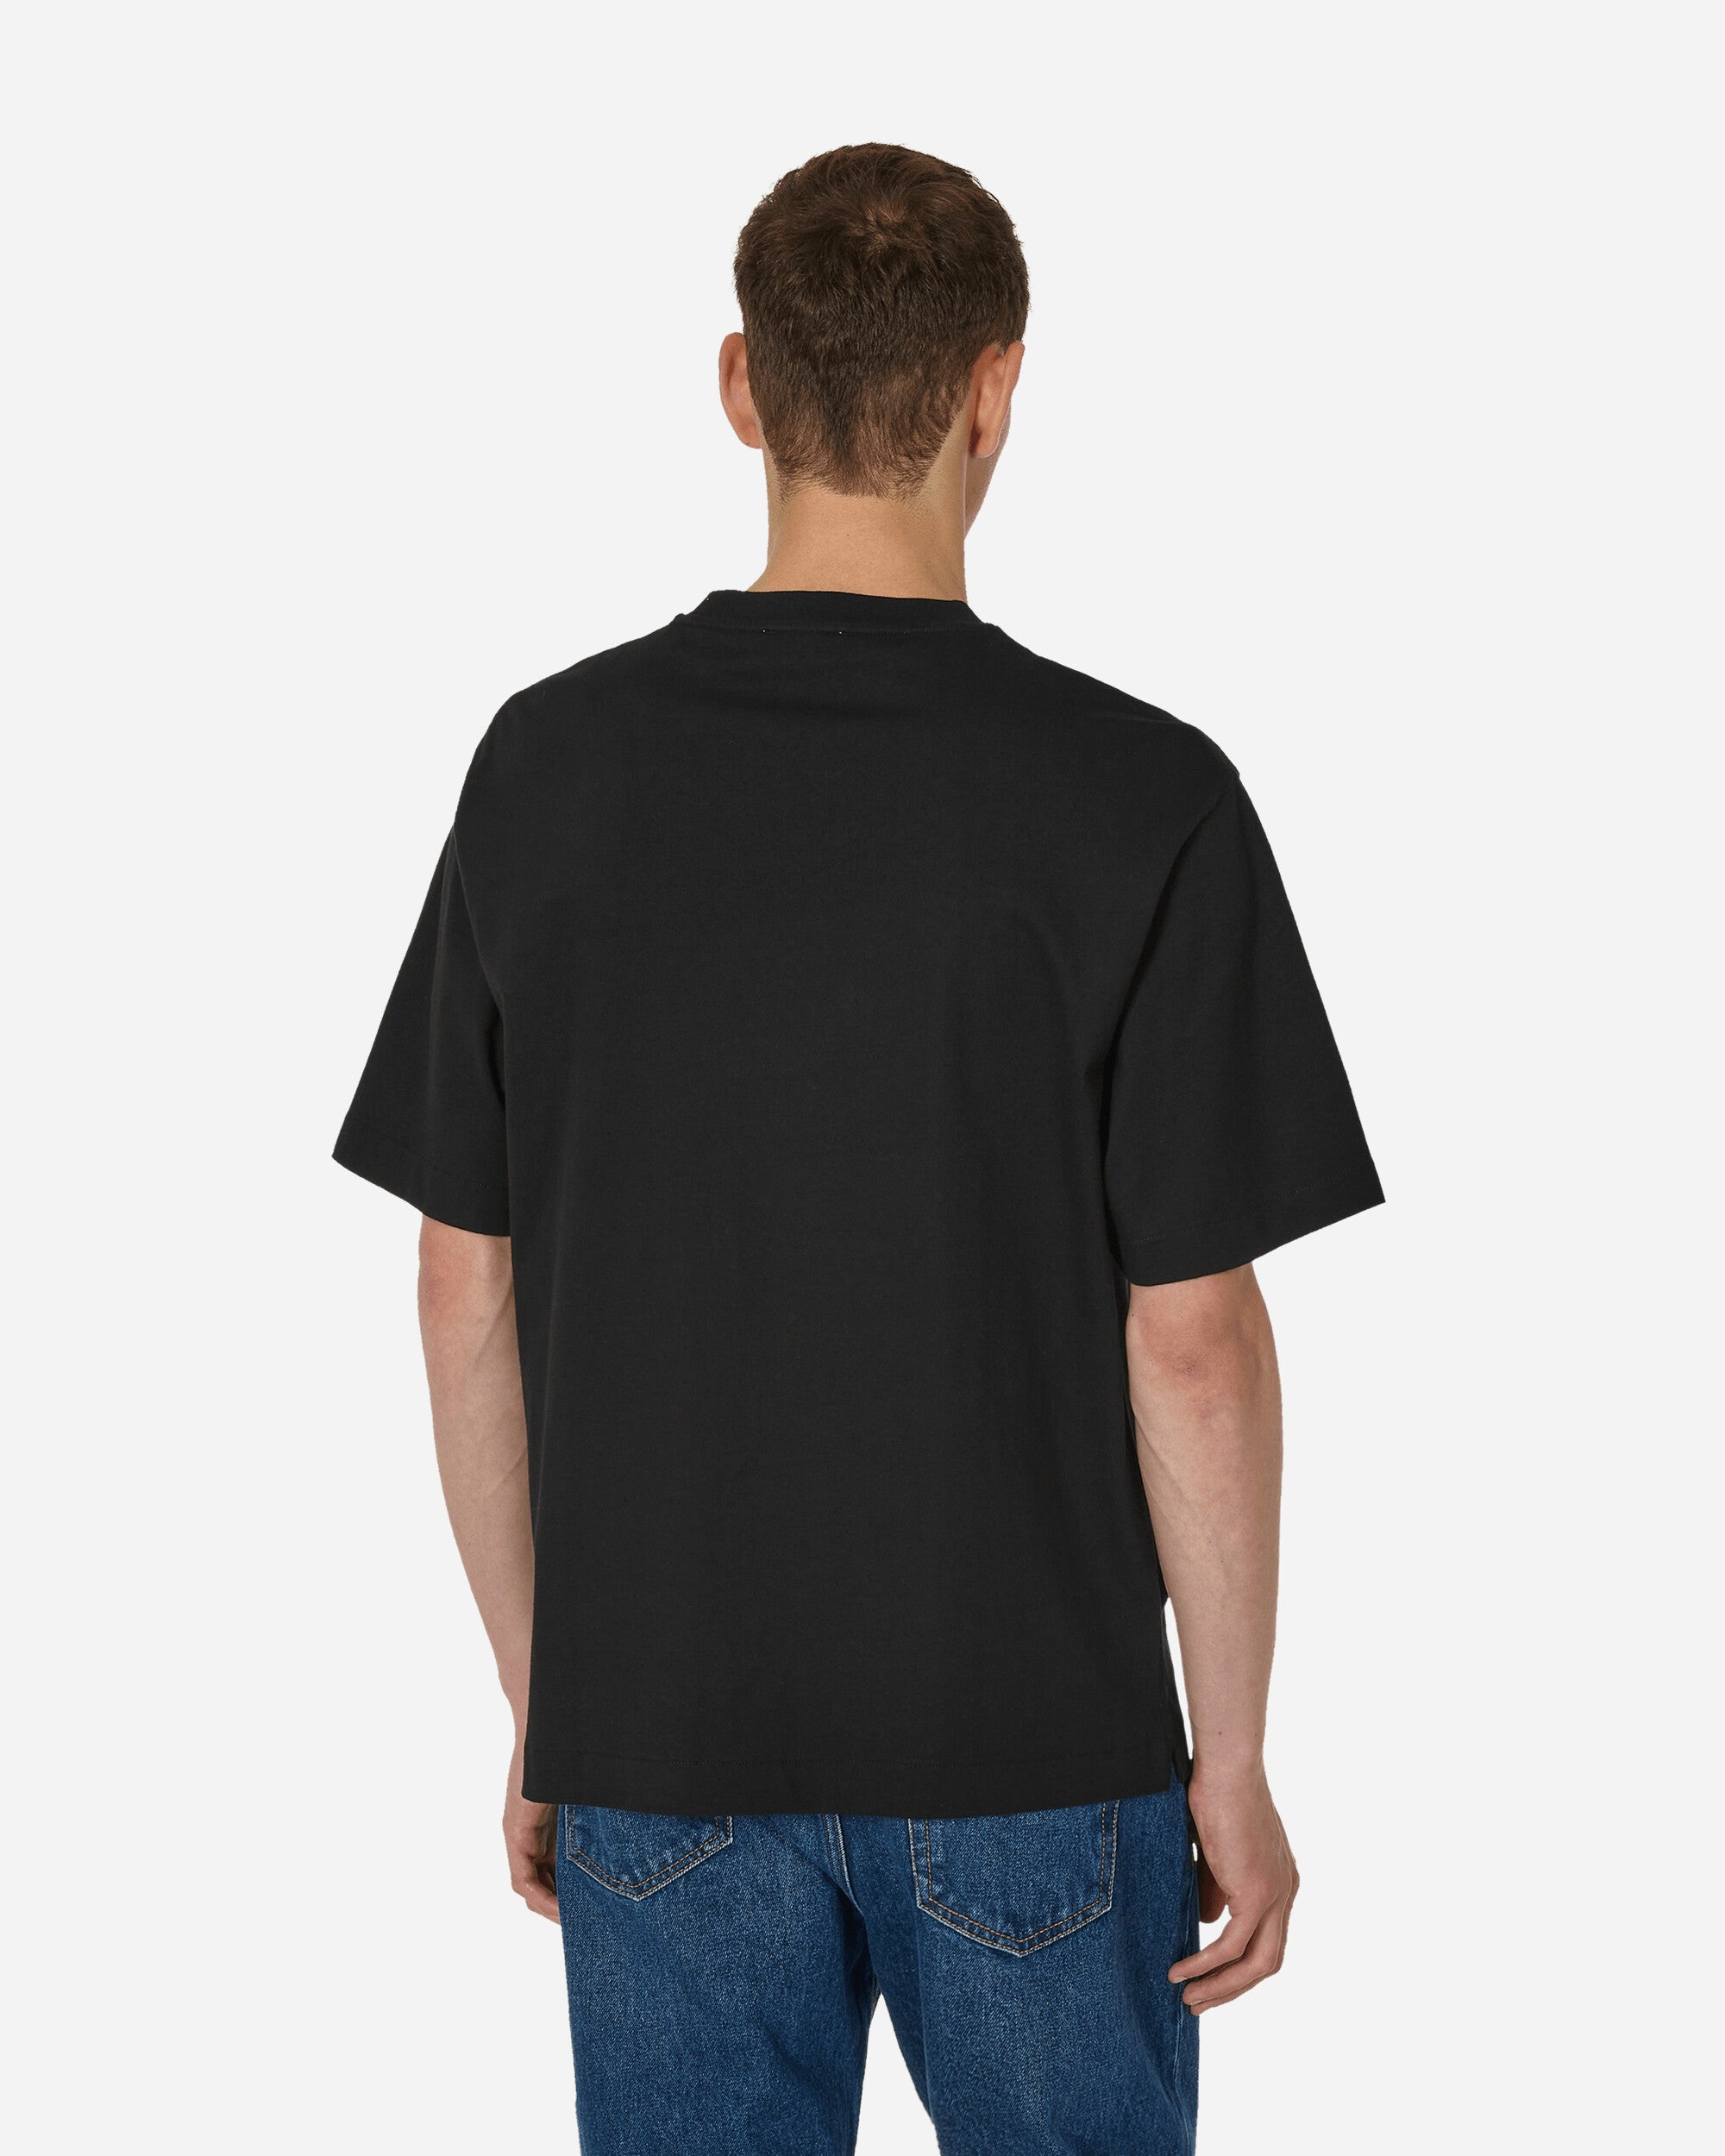 Off Stamp Skate T-Shirt Black - 3